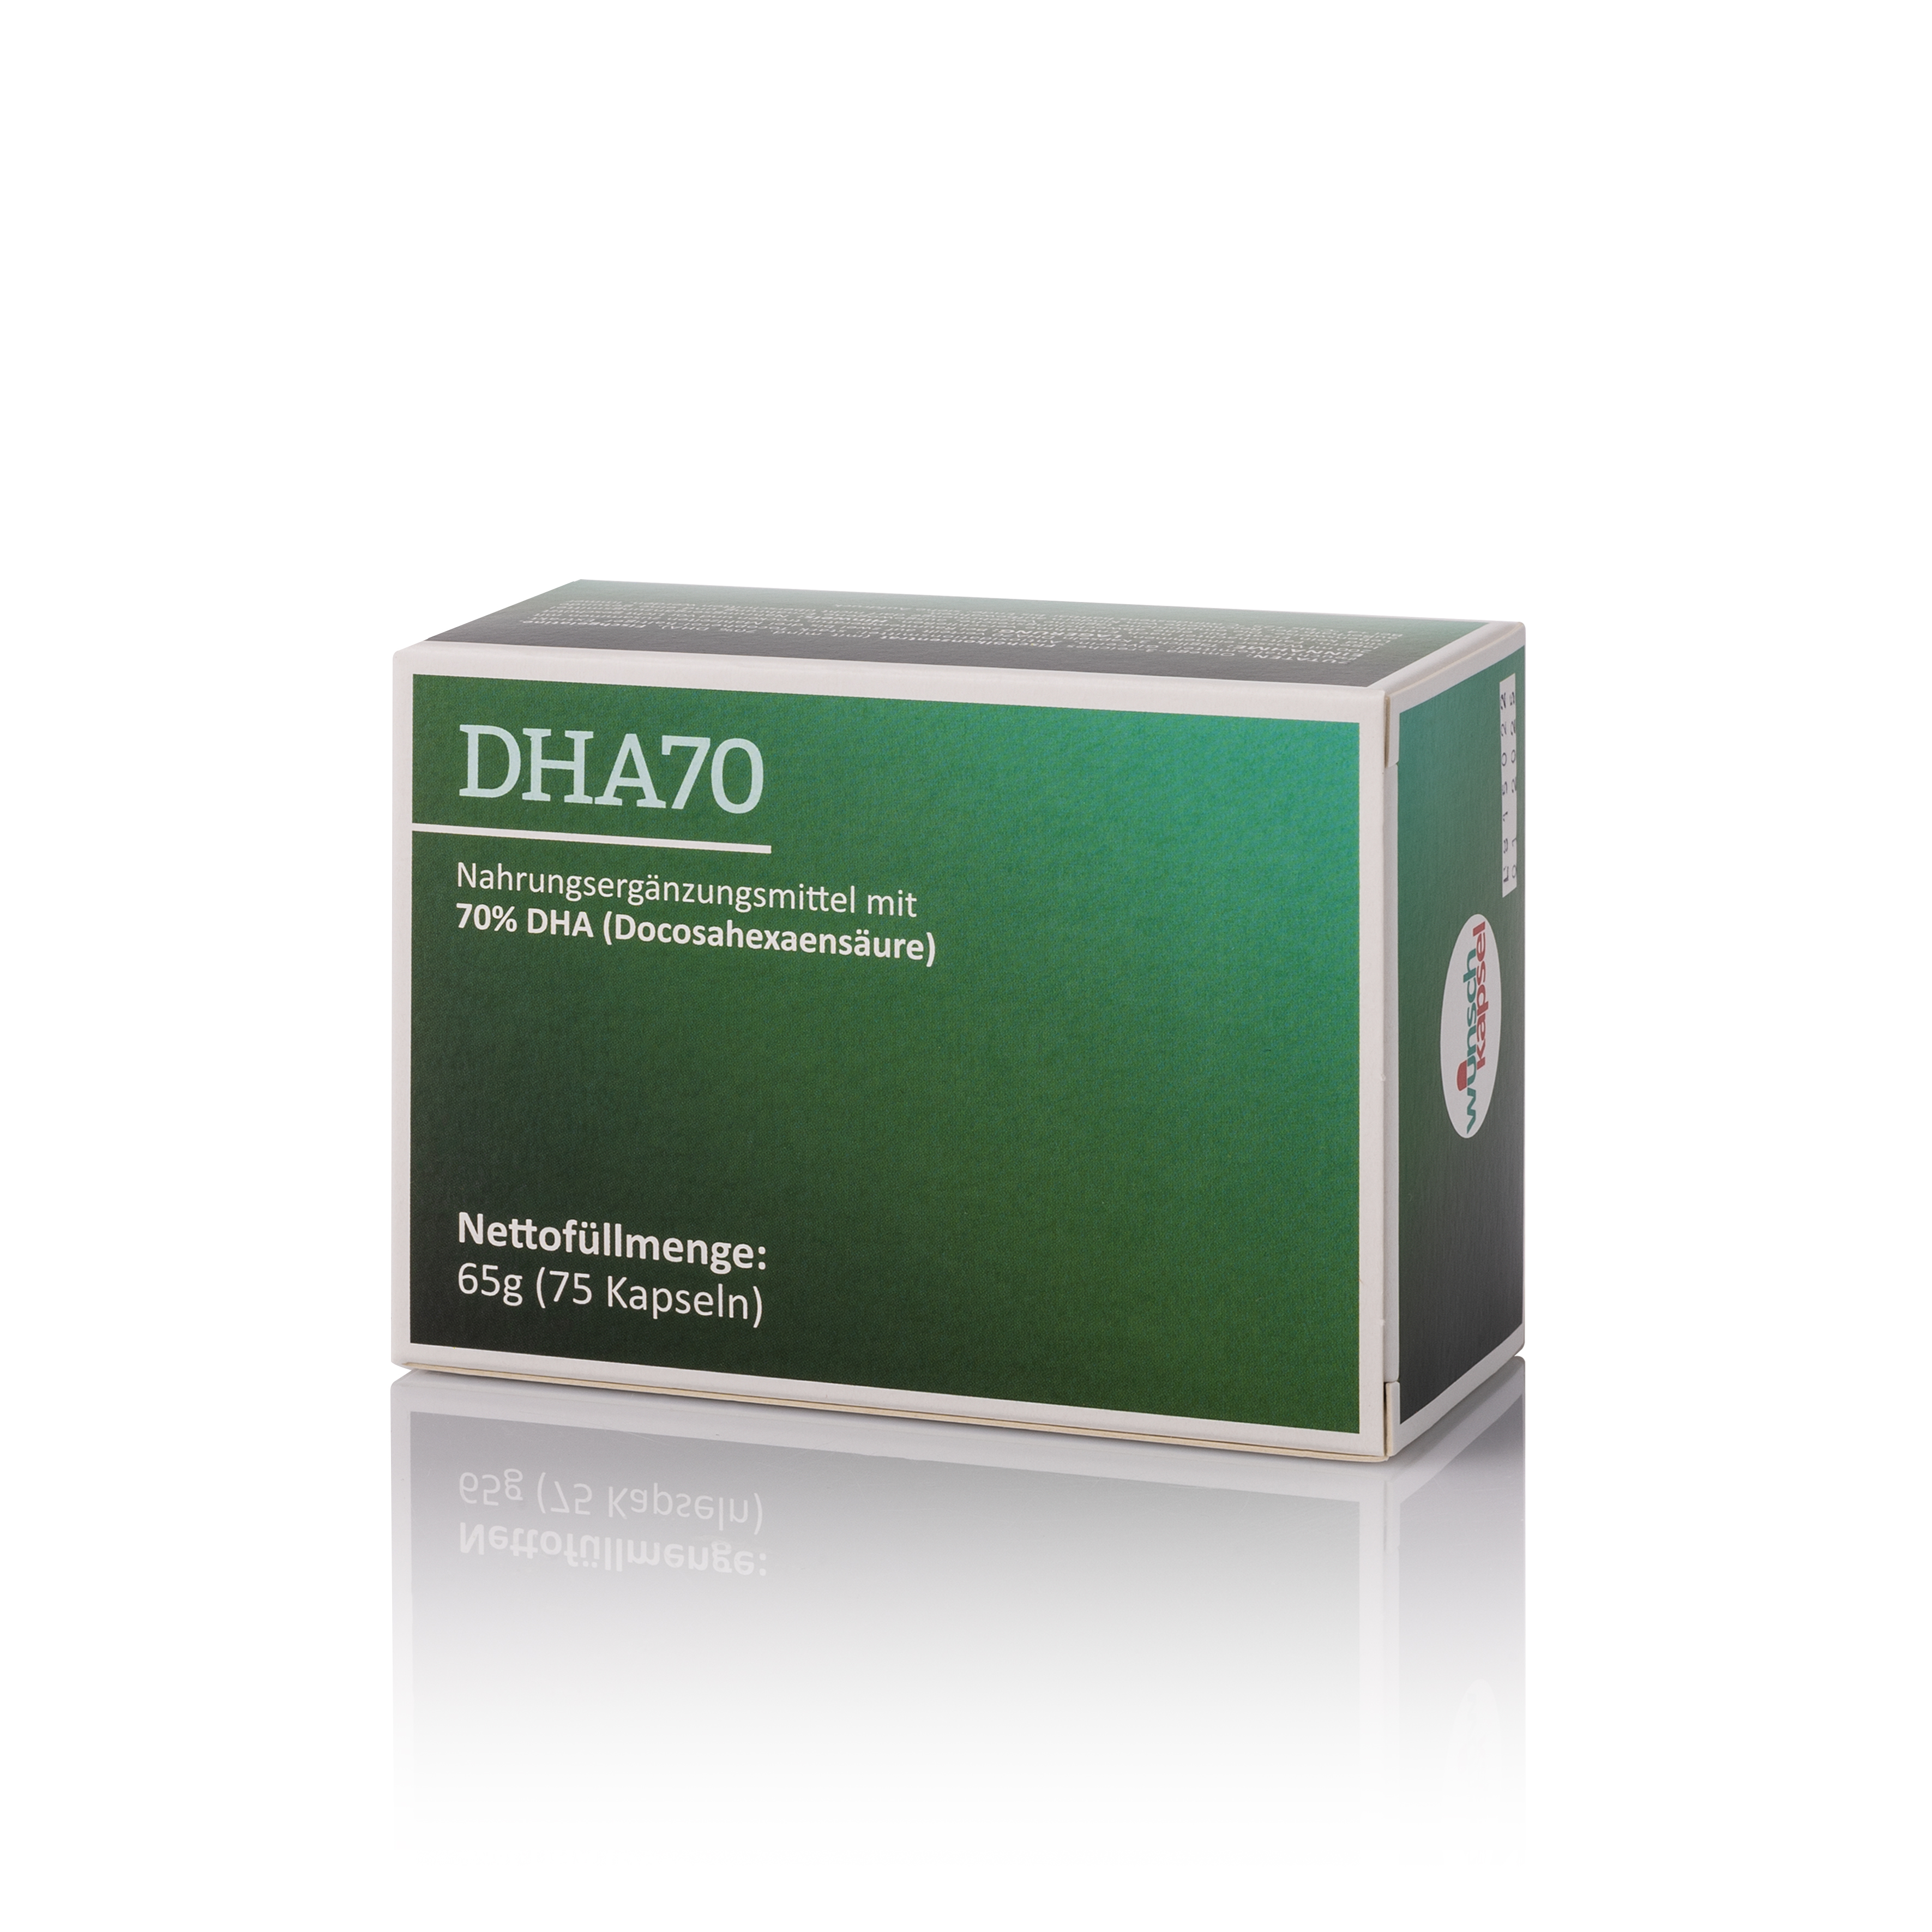 DHA70 (70% DHA, 500 mg pro Kapsel)